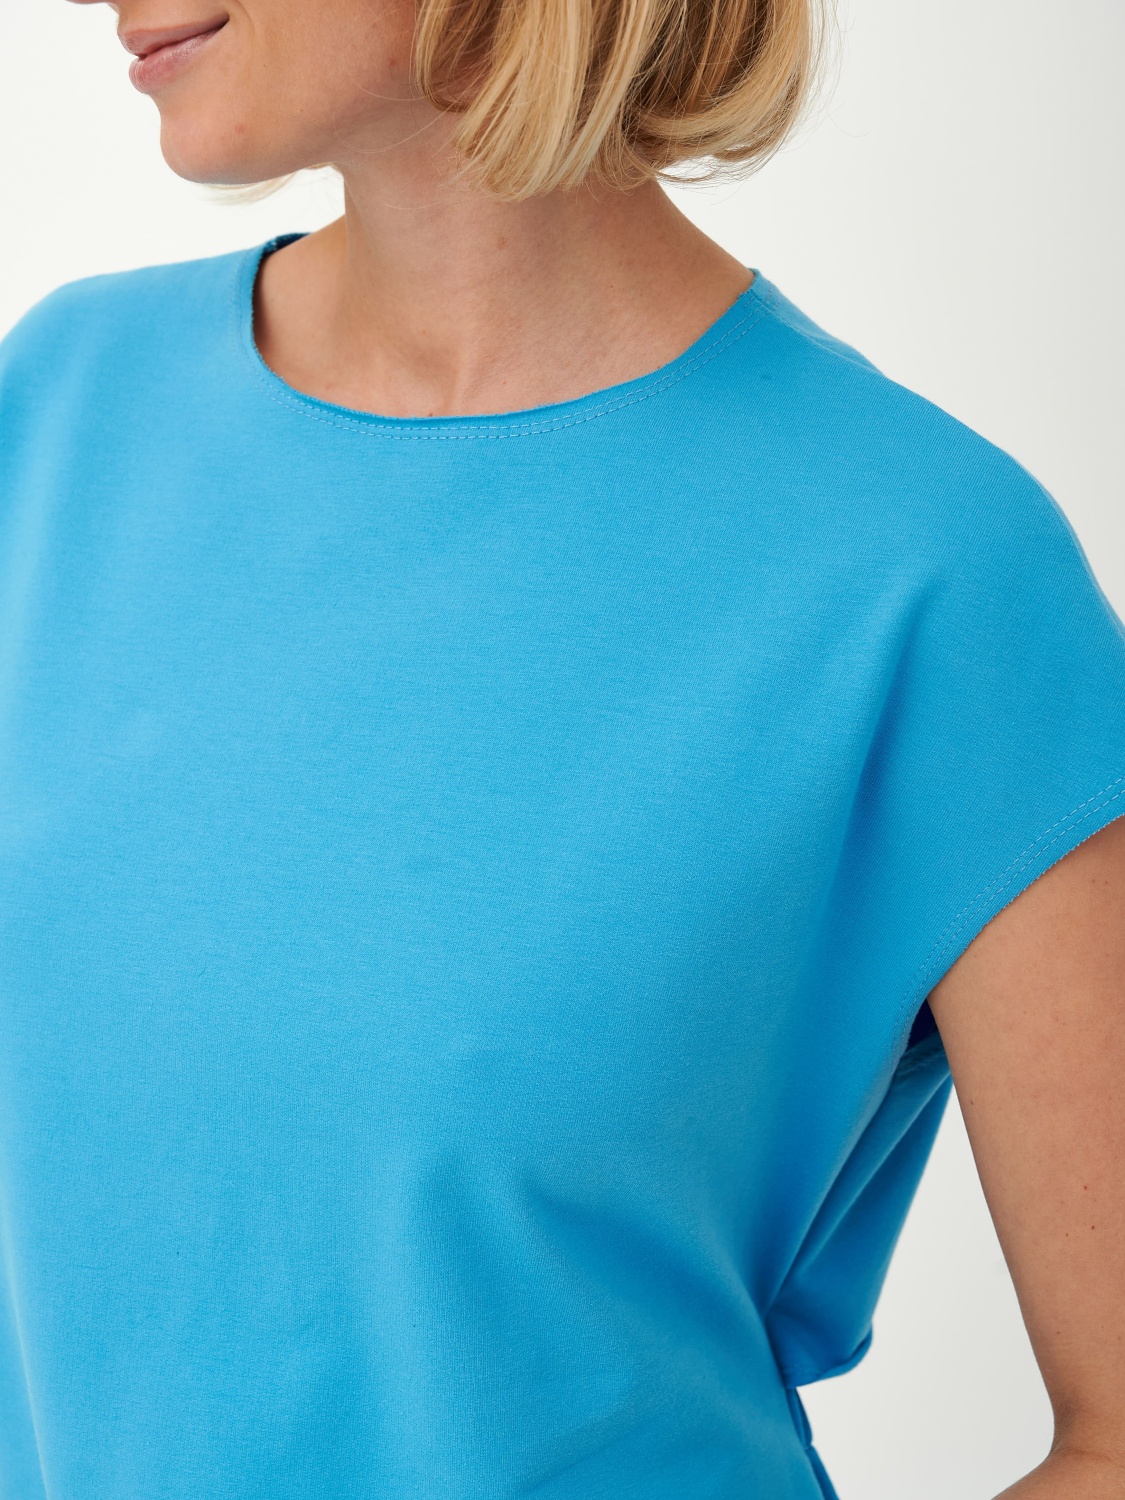 Платье-футболка с открытой спиной (XS-S, Голубой)